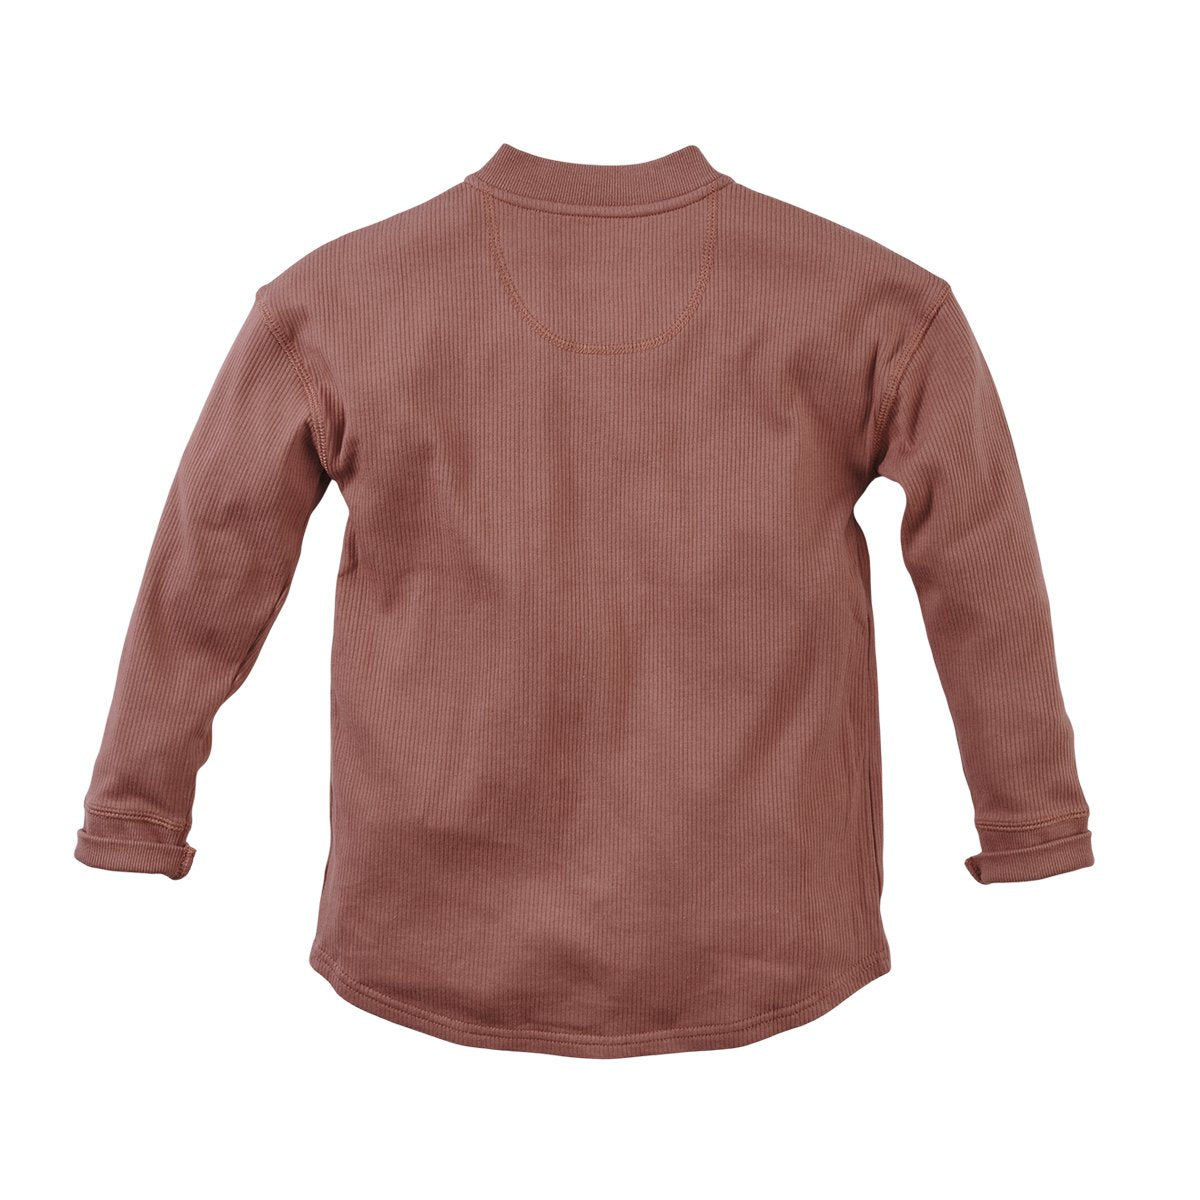 Jongens Sweater Mitch van Z8 in de kleur Red rust in maat 140/146.